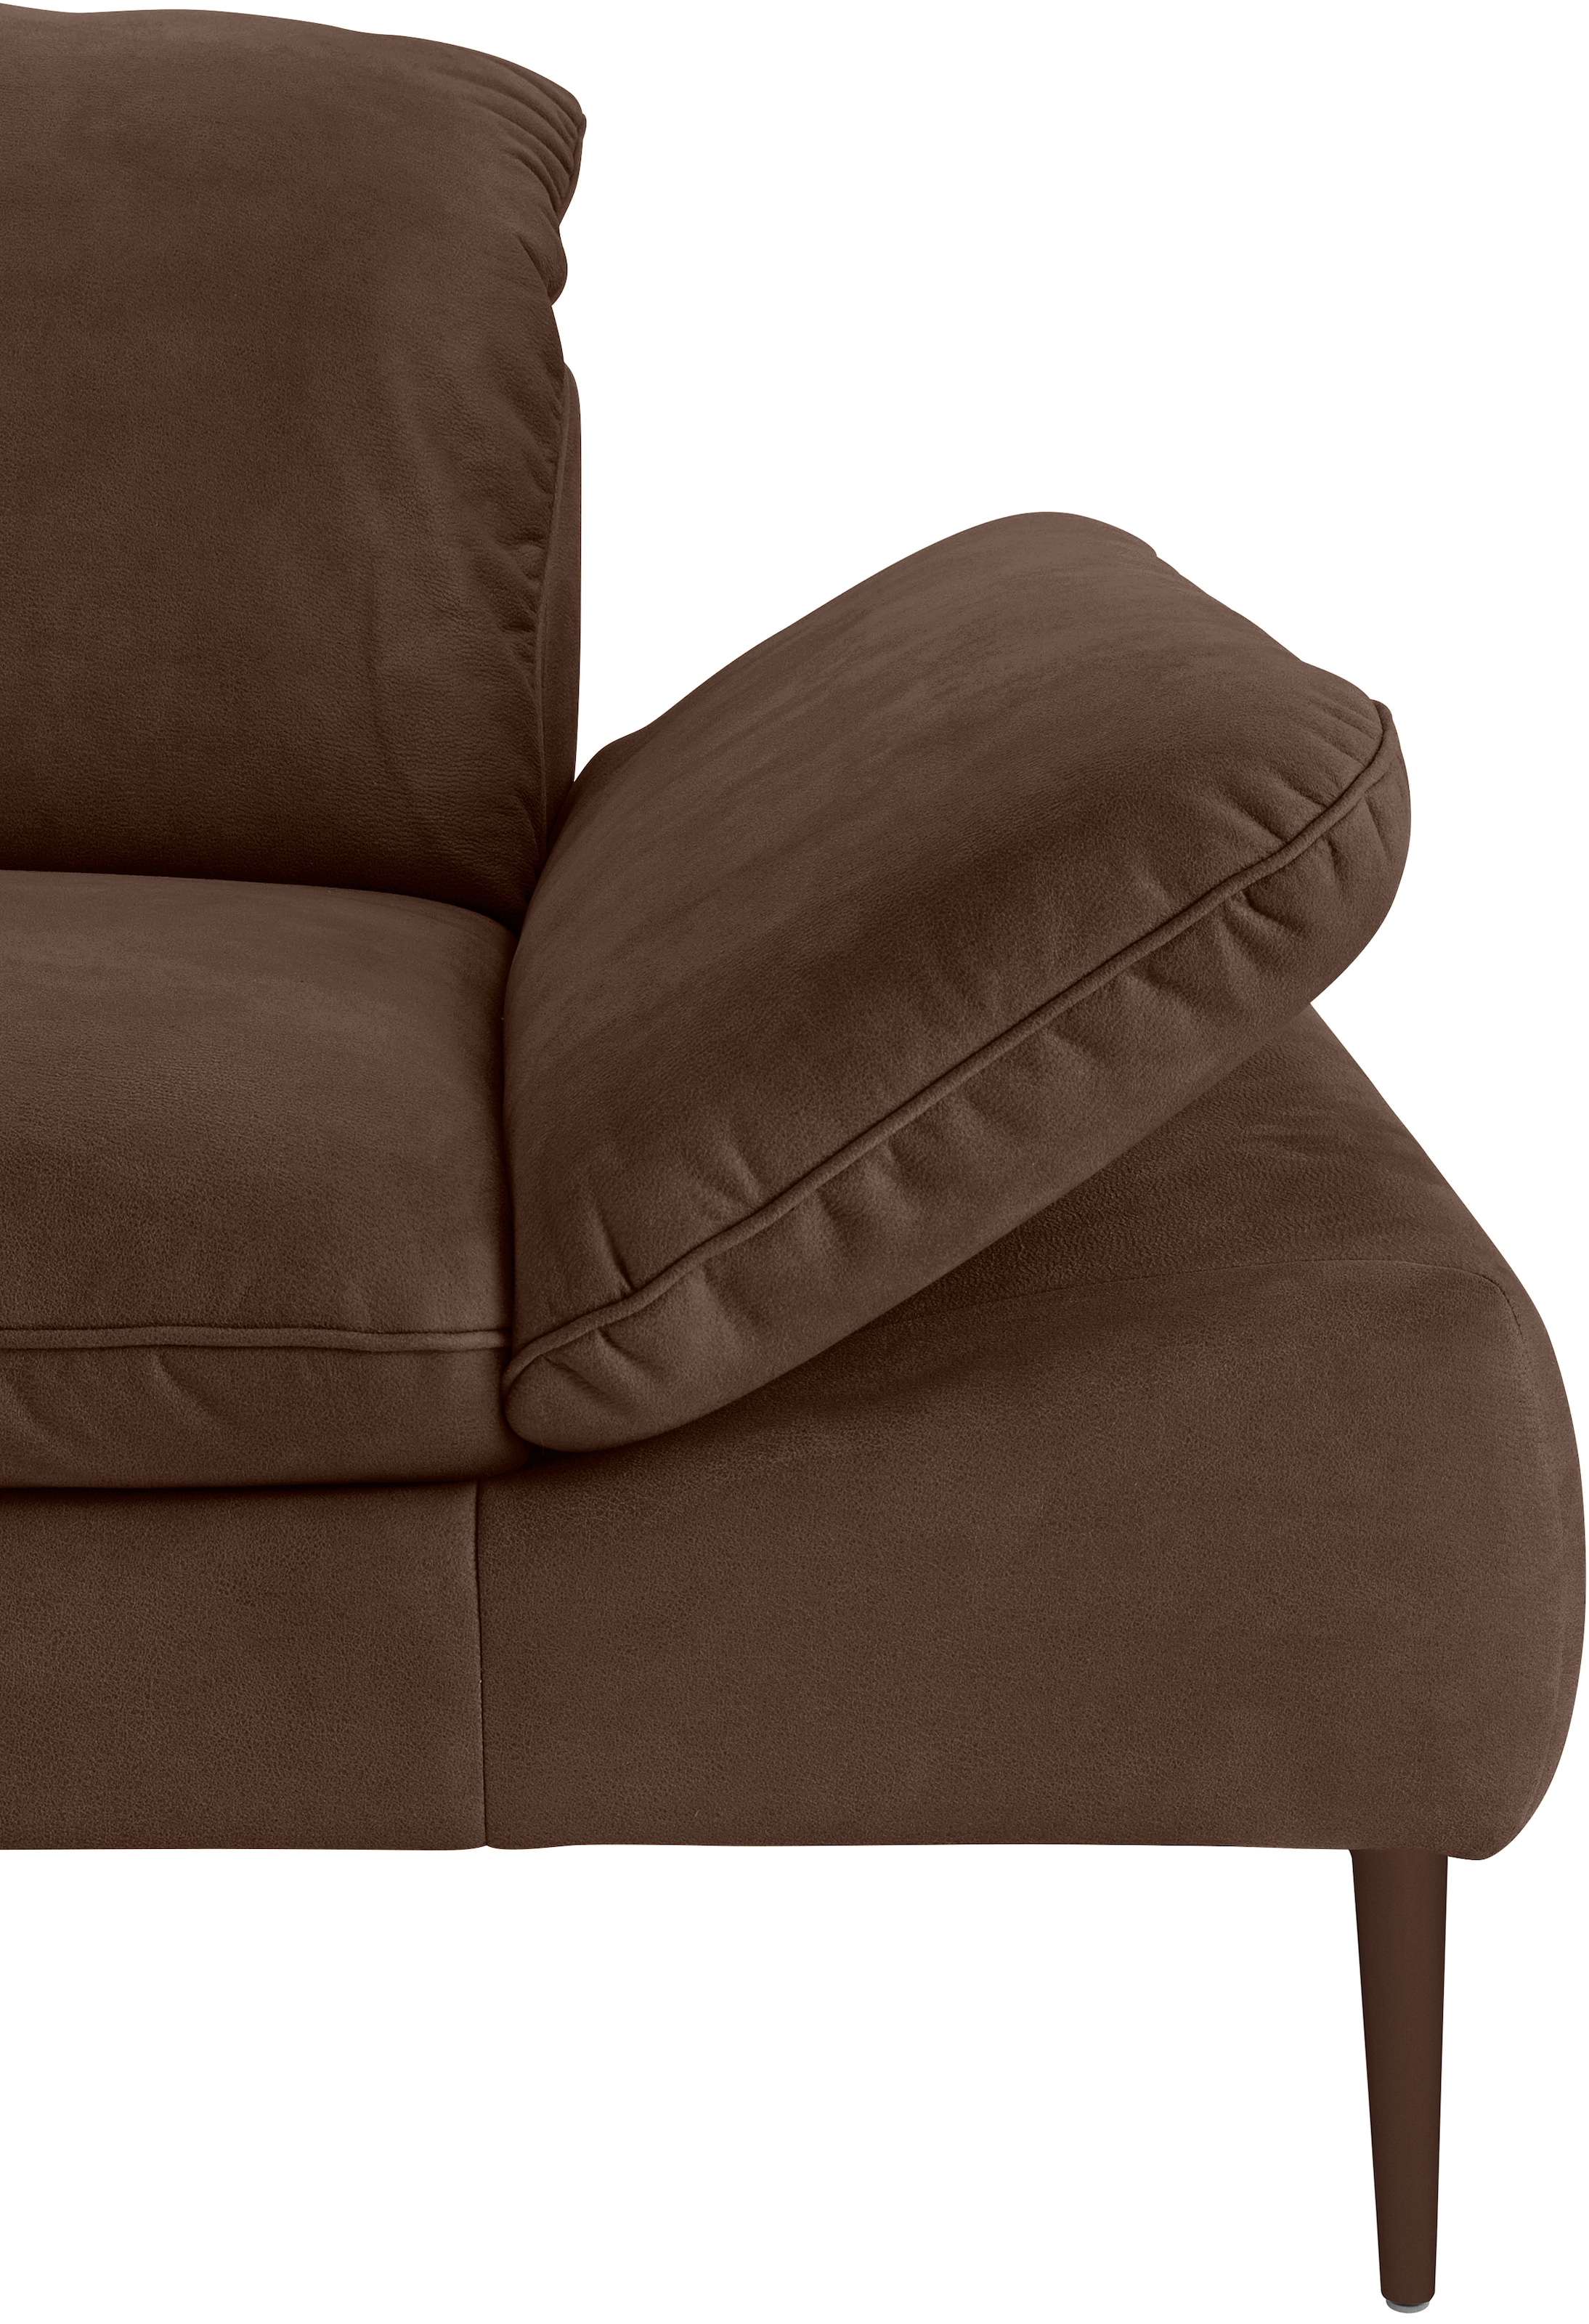 W.SCHILLIG 2-Sitzer »enjoy&MORE«, Sitztiefenverstellung, Füße bronze pulverbeschichtet, Breite 202 cm